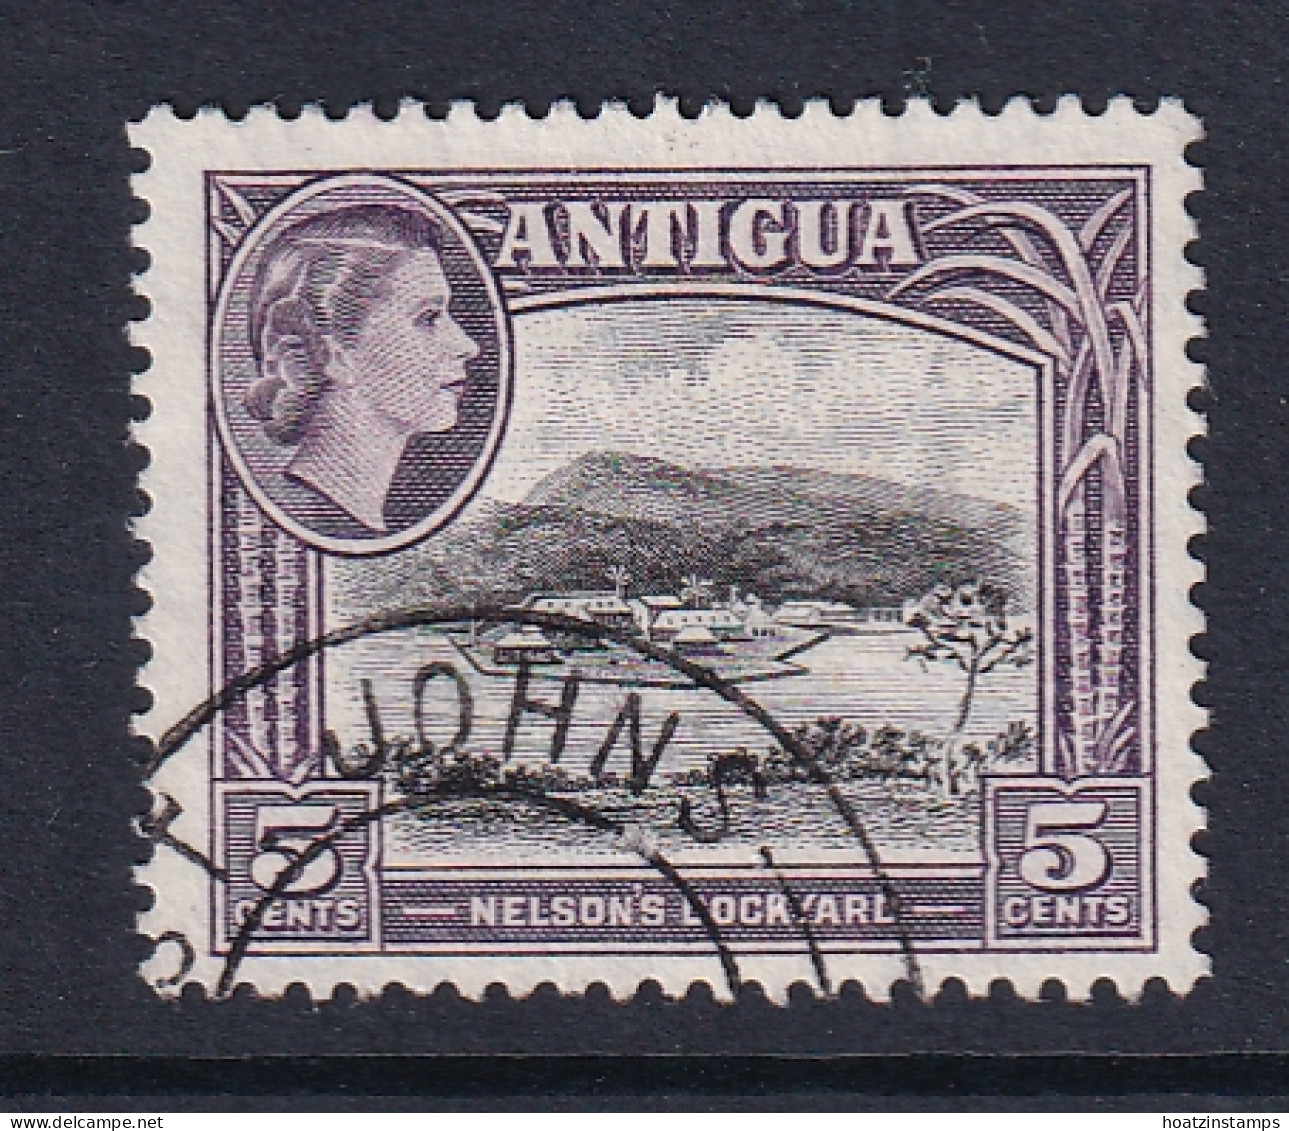 Antigua: 1953/62   QE II - Pictorial     SG125    5c       Used - 1858-1960 Colonia Britannica